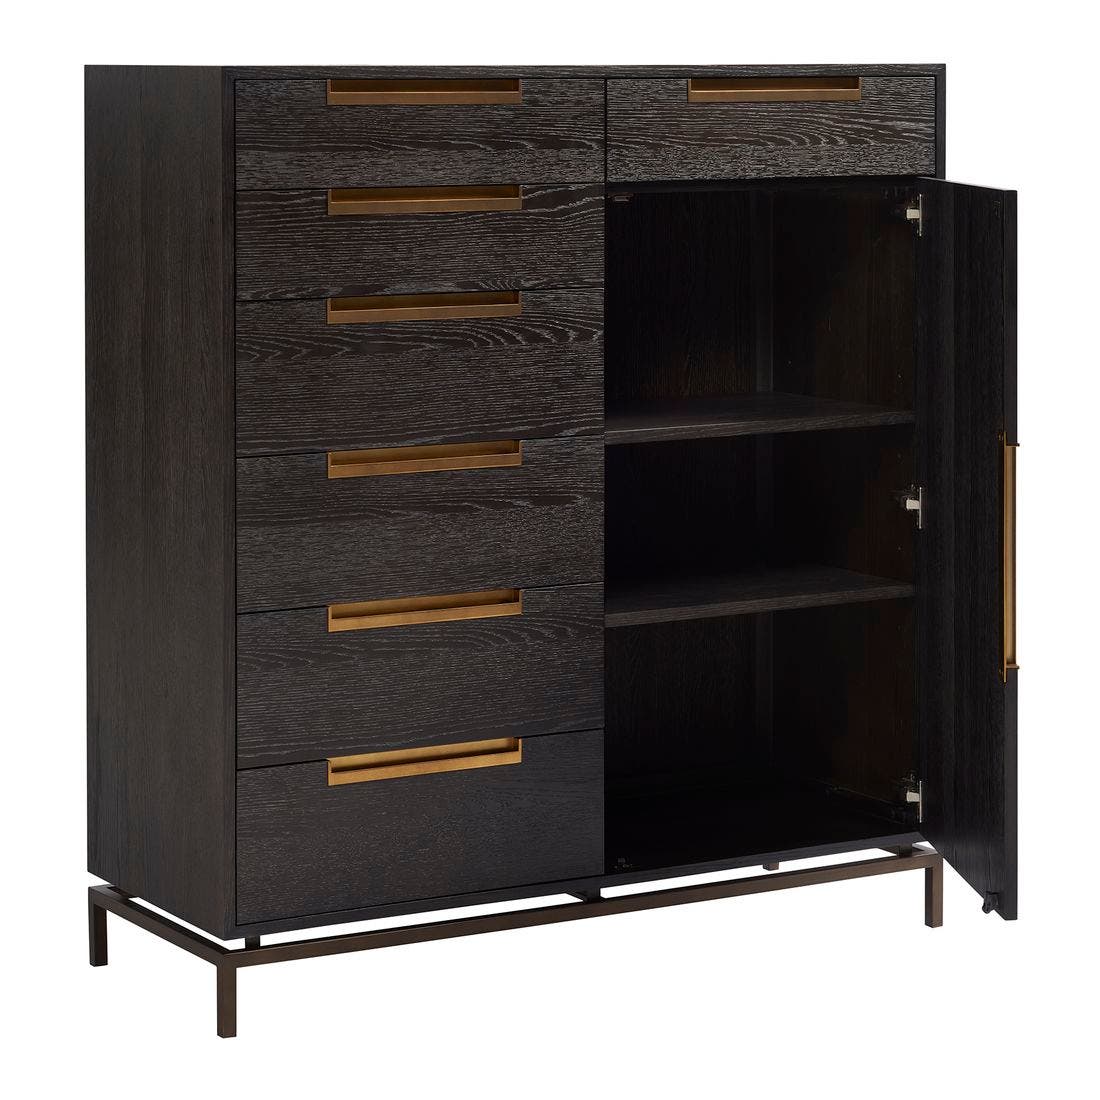 19170495-modern-onyx-furniture-storage-organization-storage-furniture-06